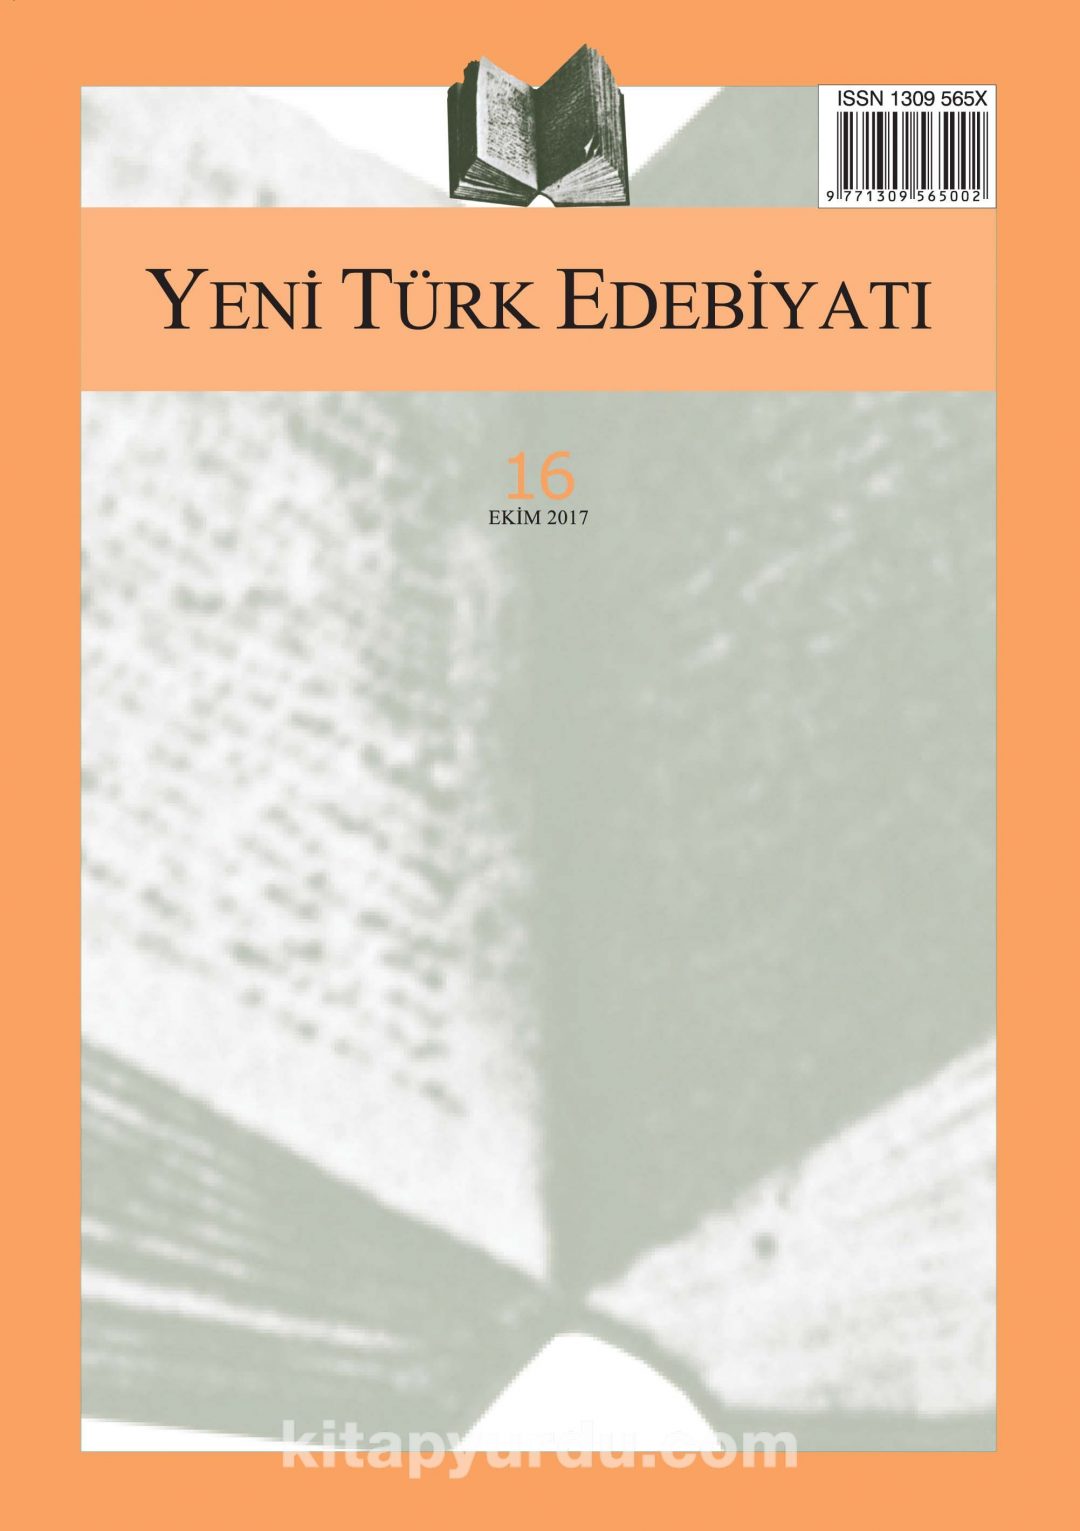 Yeni Türk Edebiyatı Hakemli Altı Aylık İnceleme Dergisi Sayı:16 Ekim 2017